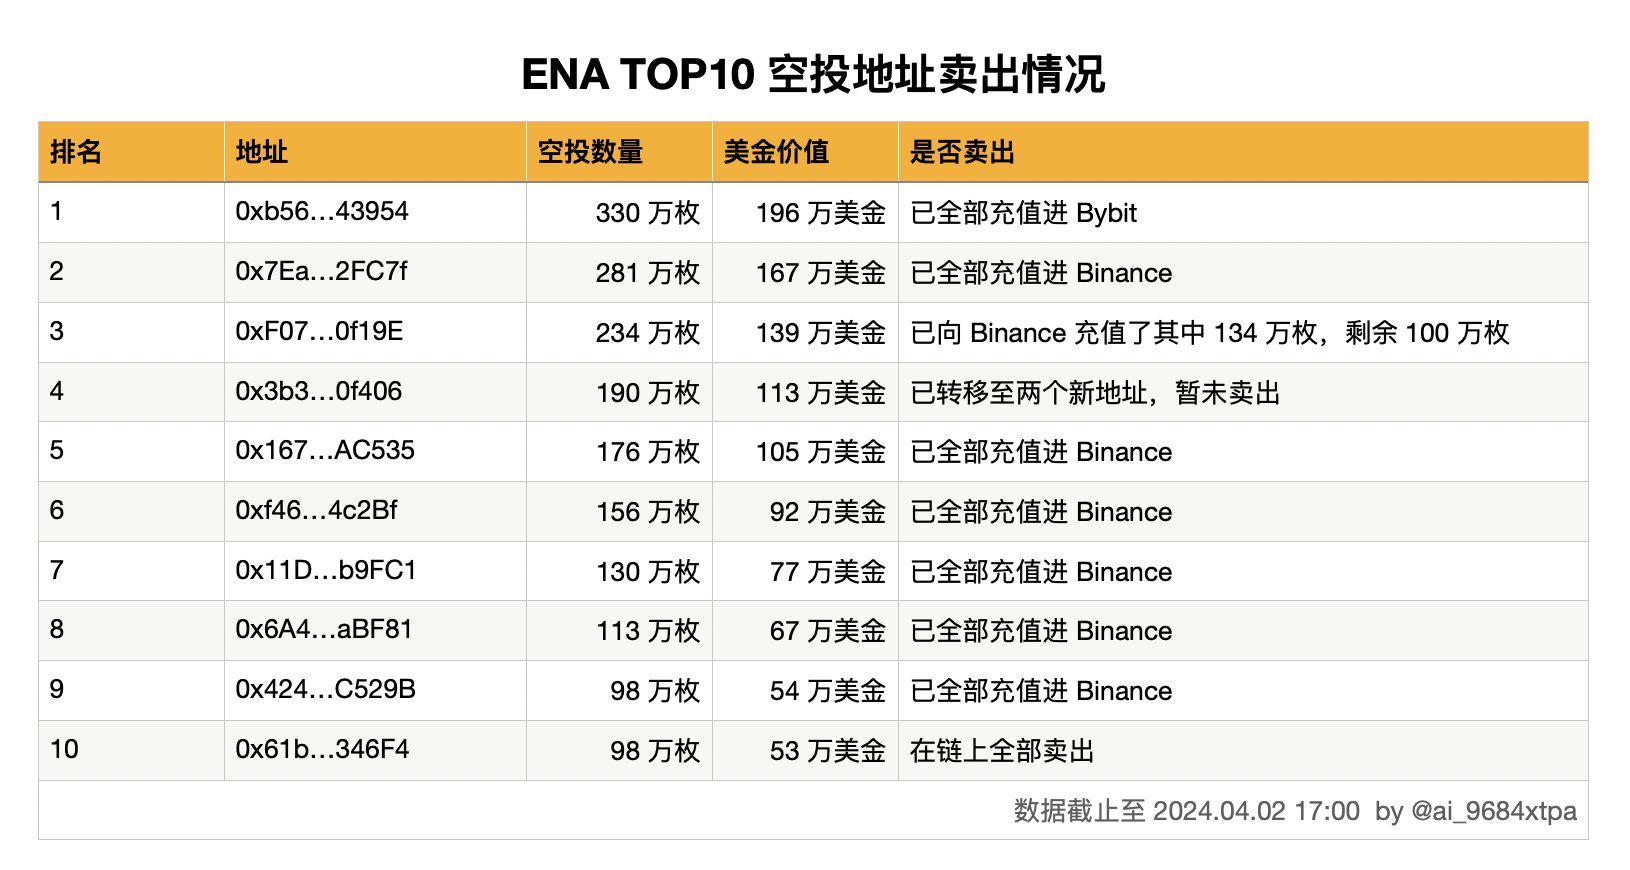 ENA空投TOP10地址共申领1808万枚ENA，目前仅有1个地址尚未卖出